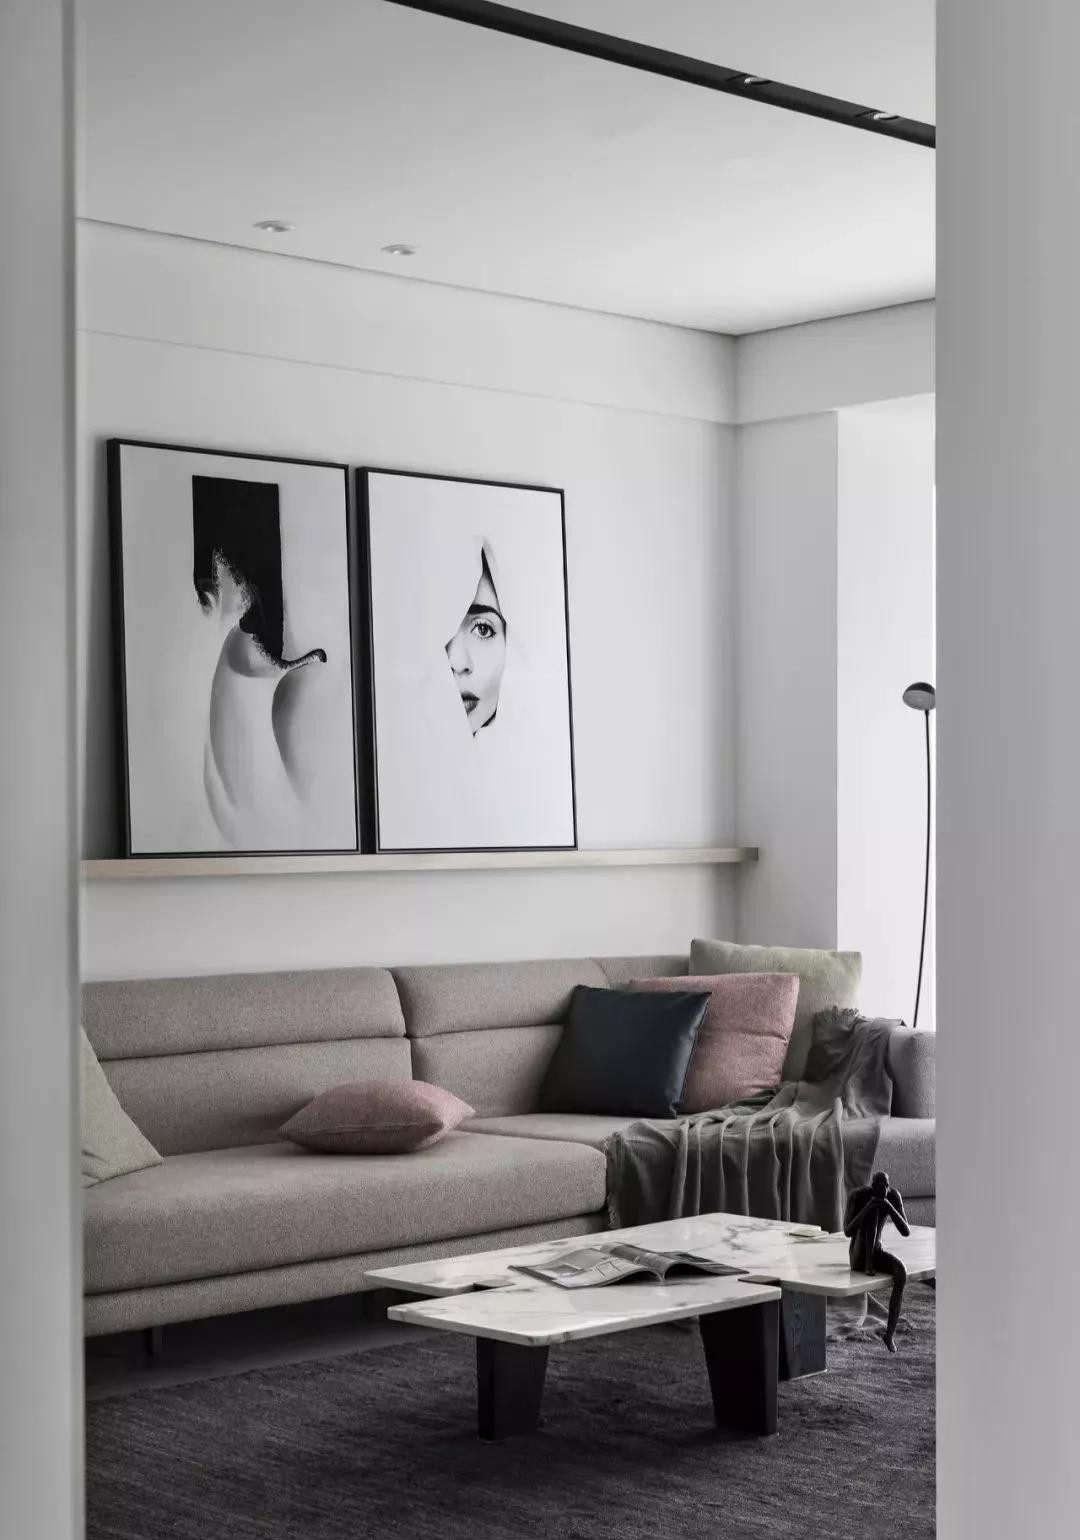 轻薄的纱帘 纯净的白色墙面 通铺灰色地砖 奠定了空间优雅简约的基调